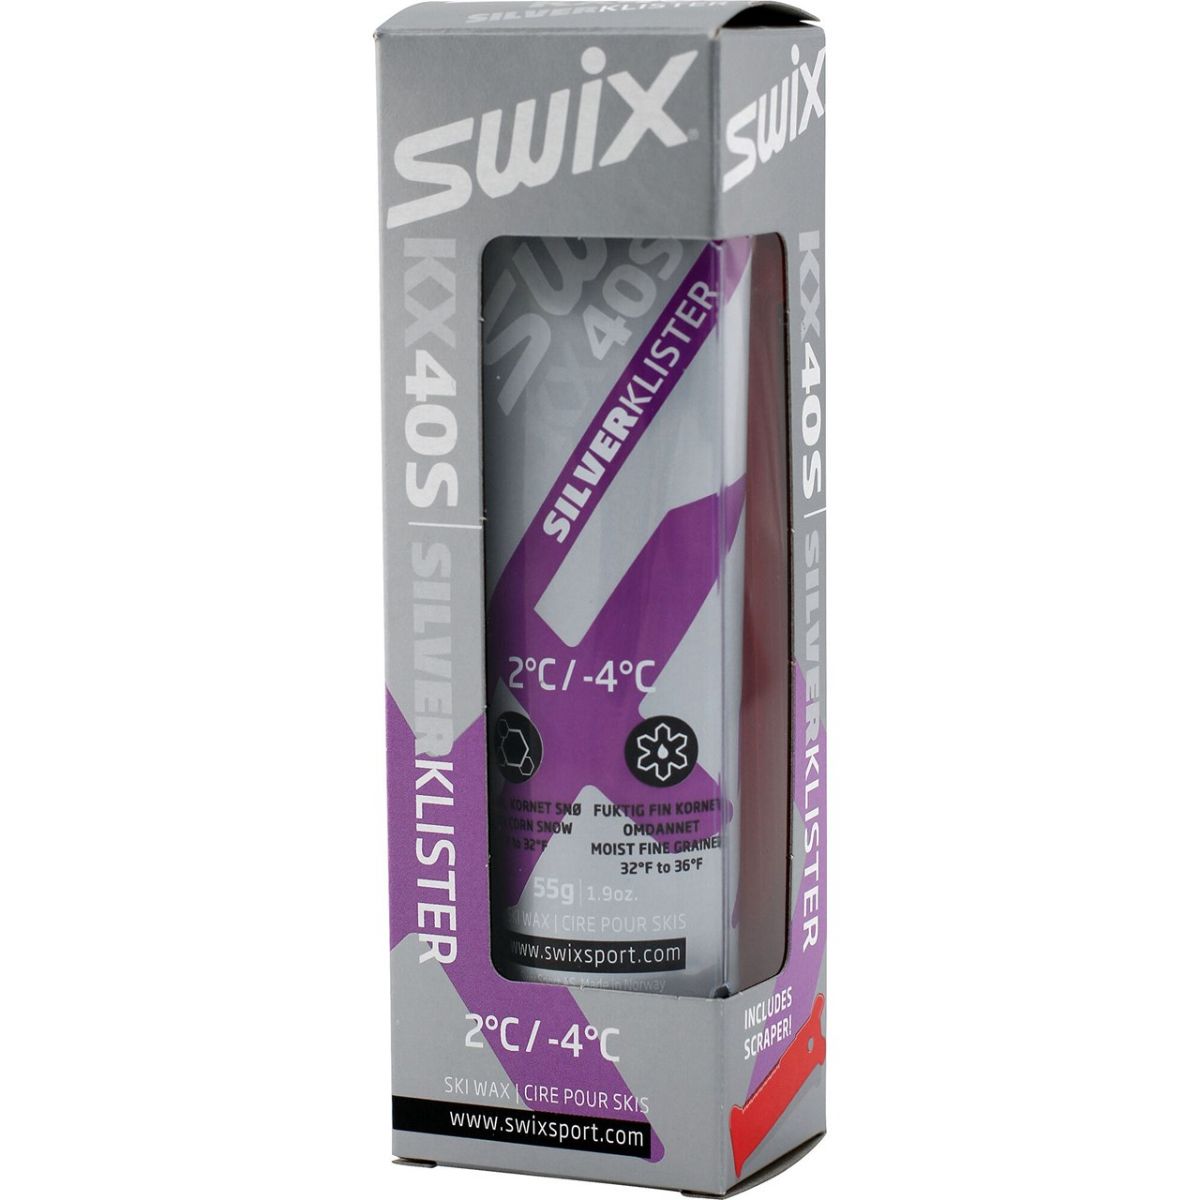 Swix-kx40s-klister-sølv